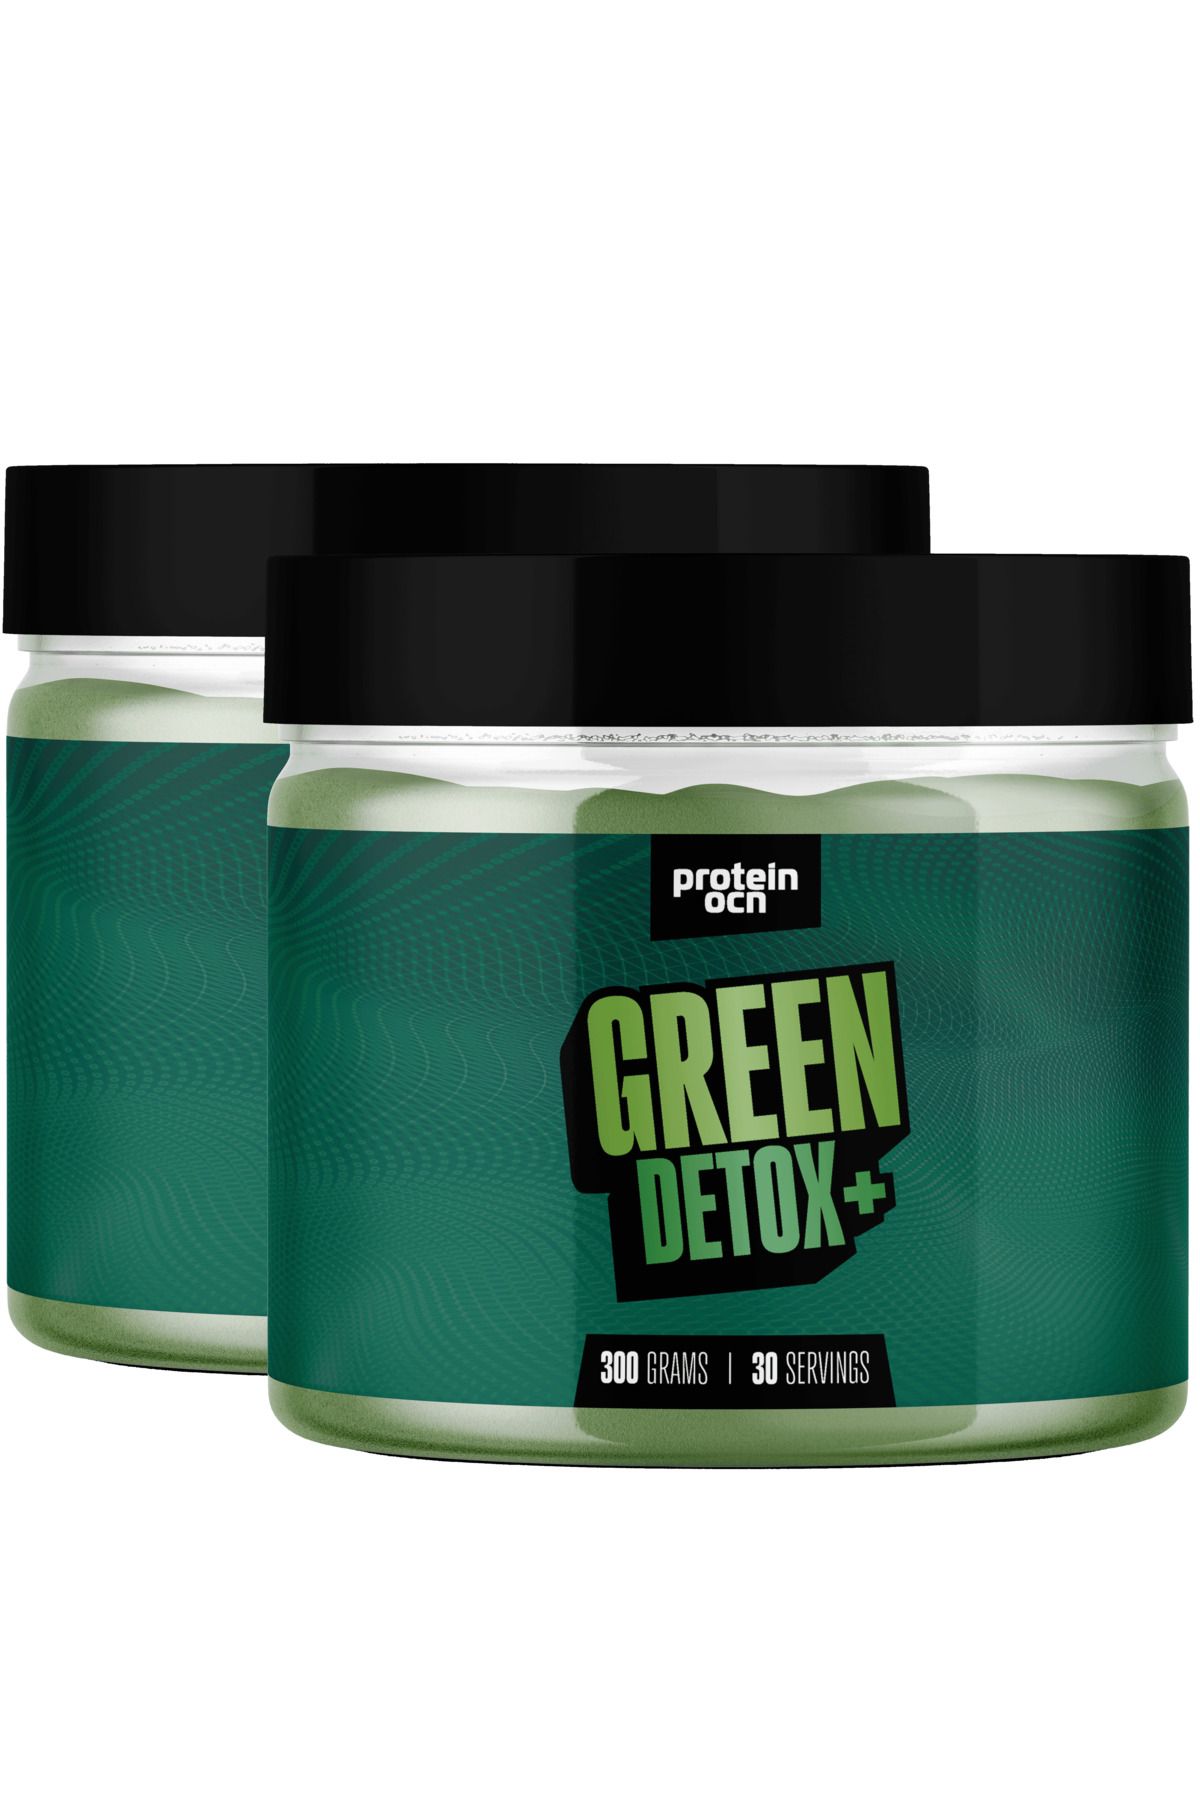 Proteinocean Green Detox+™ 300g X 2 Adet - 60 Servis